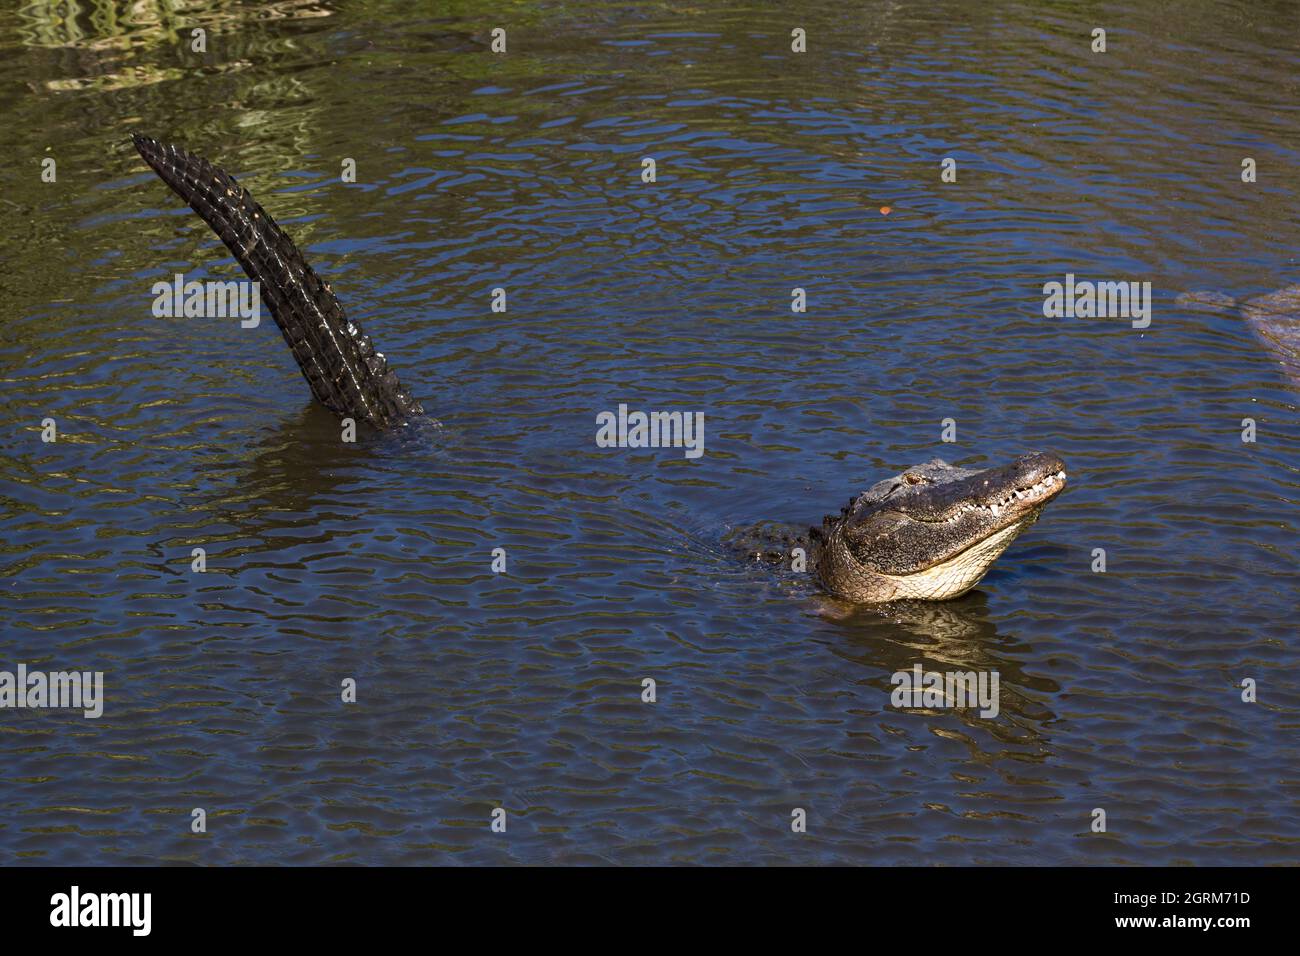 Un cocodrilo americano adulto, Alligator mississippiensis, puede medir de 3,4 a 4,6 m (11 a 15 pies) de longitud, y puede pesar hasta 453 kg (1.000 libras). Foto de stock